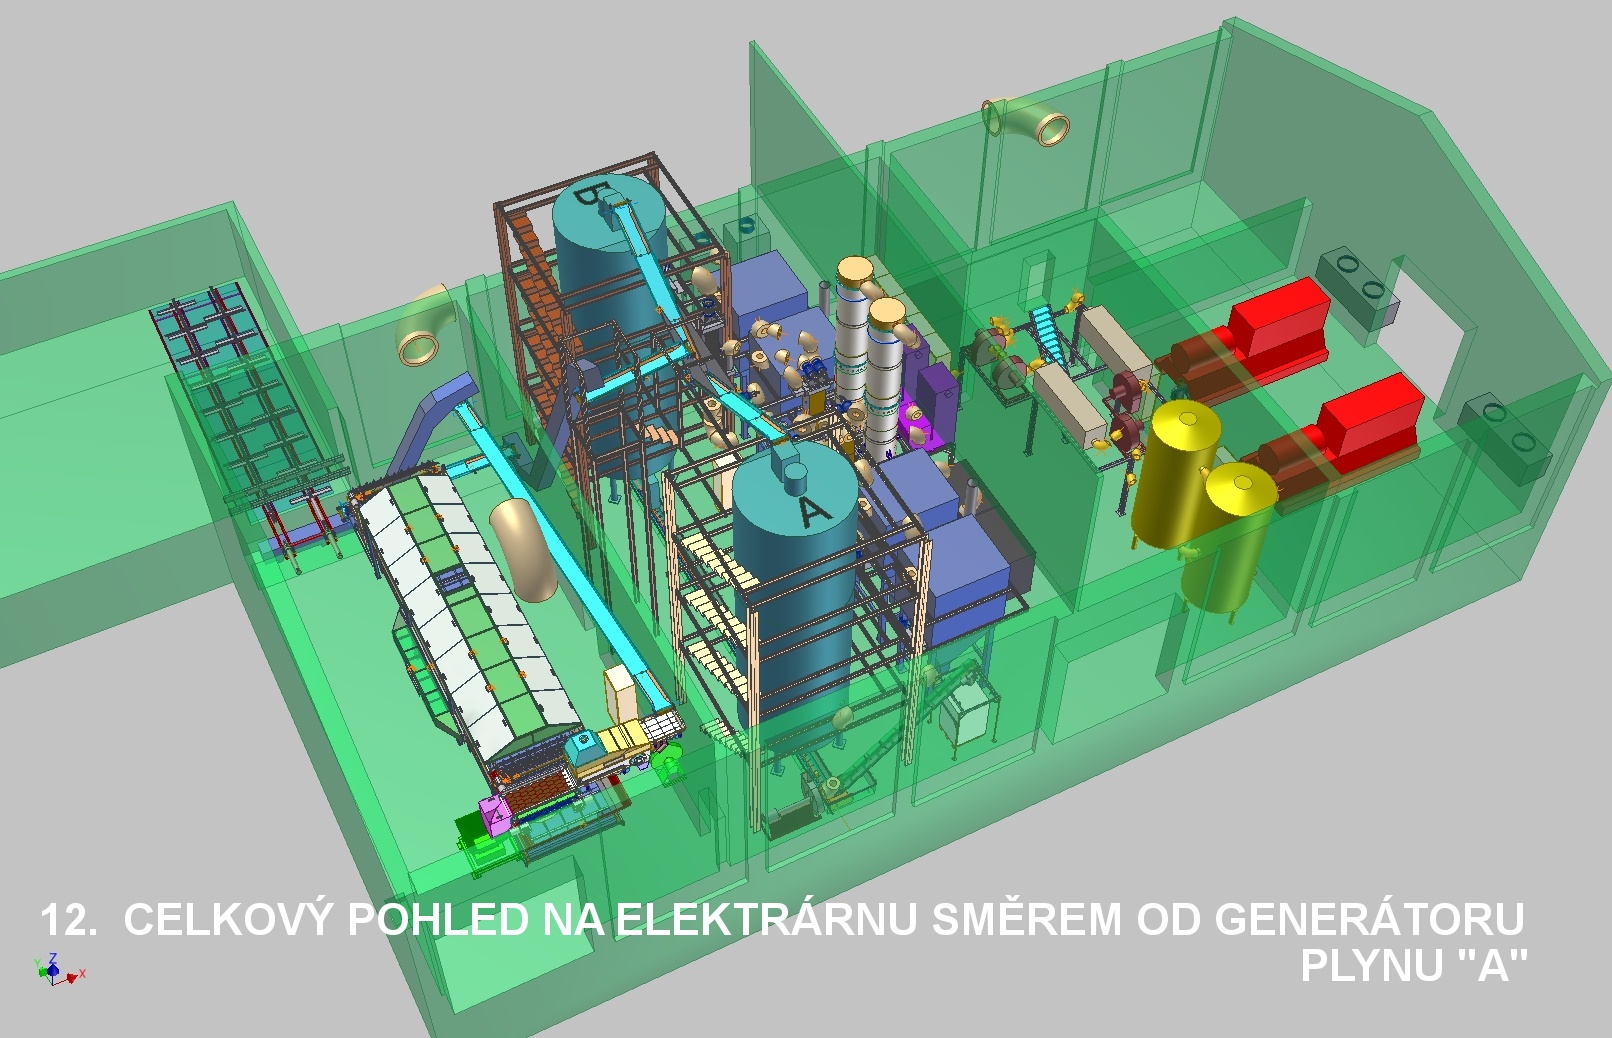 Celkový pohled na elektrárnu od generátoru plynu (AIR TECHNIC s.r.o.)